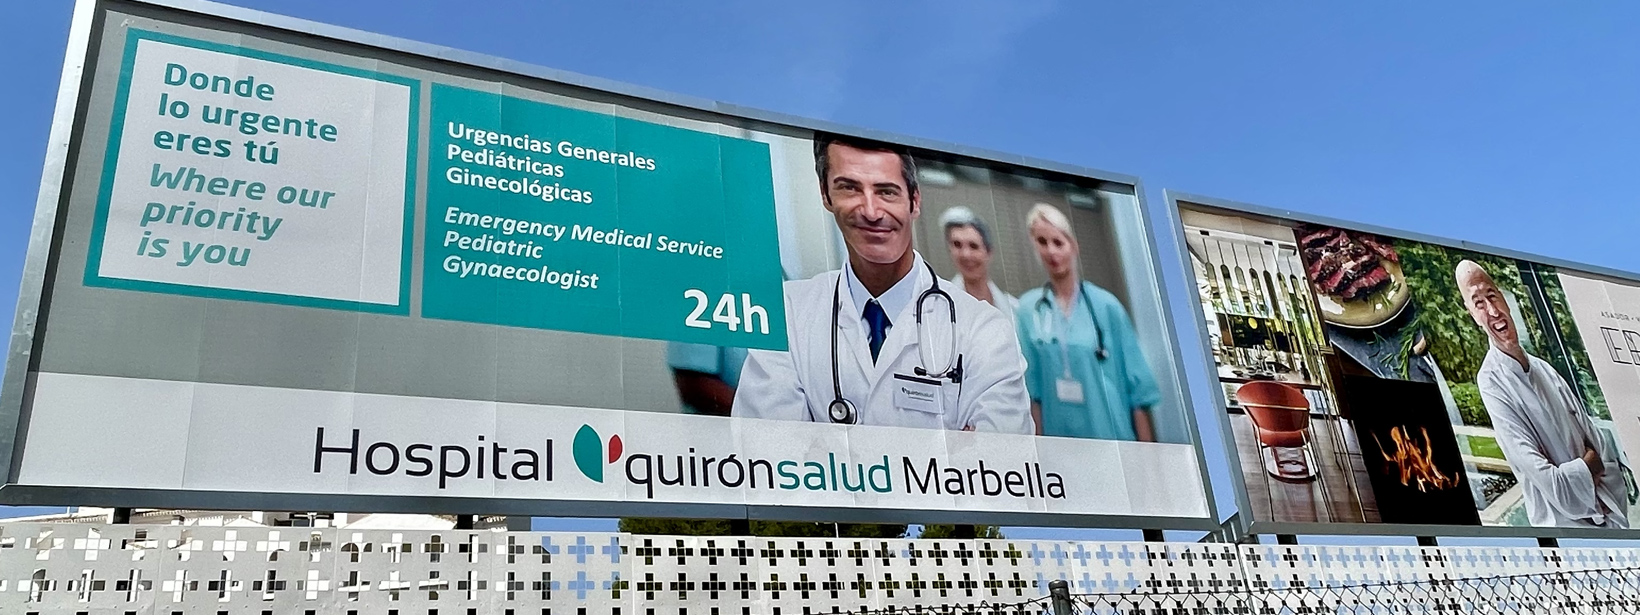 Valla publicitaria de 8x3 metros de Hospital Quiron Salud en Marbella